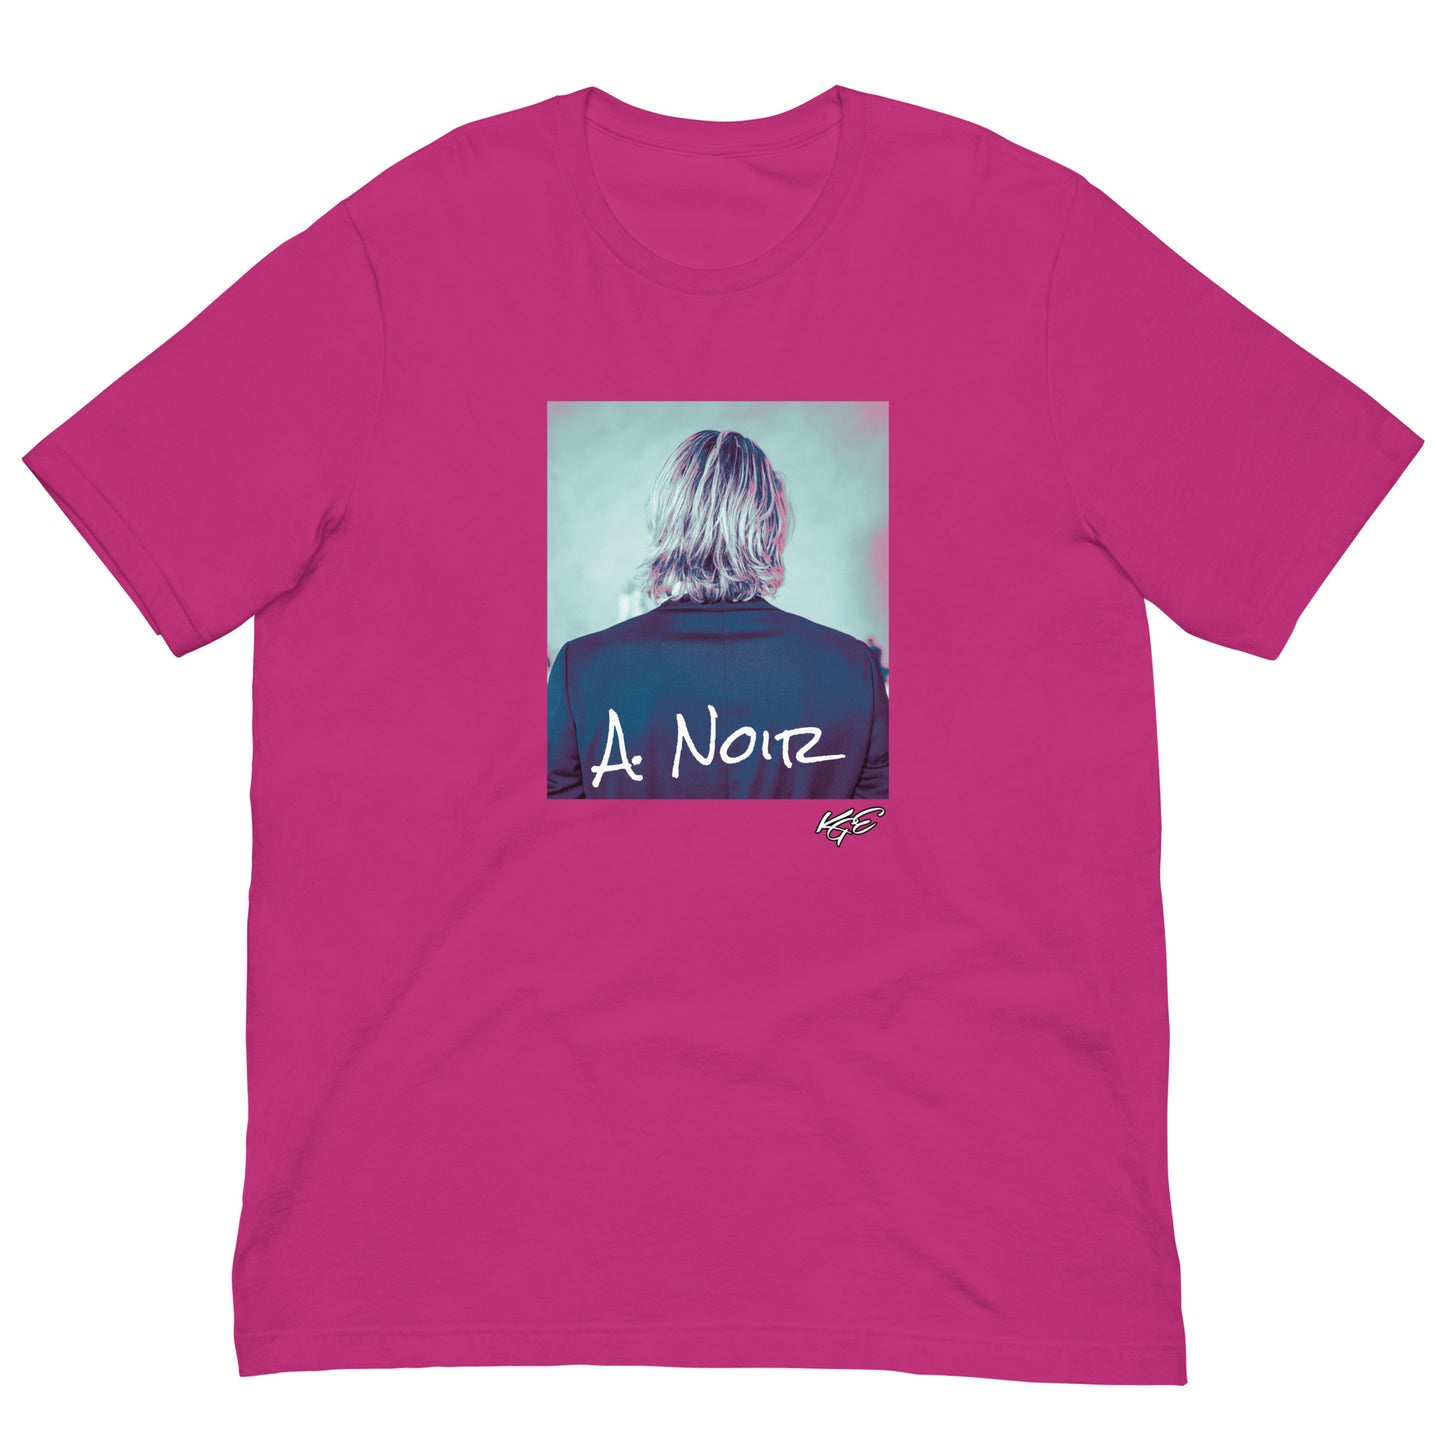 (New) A. Noir premium t-shirt